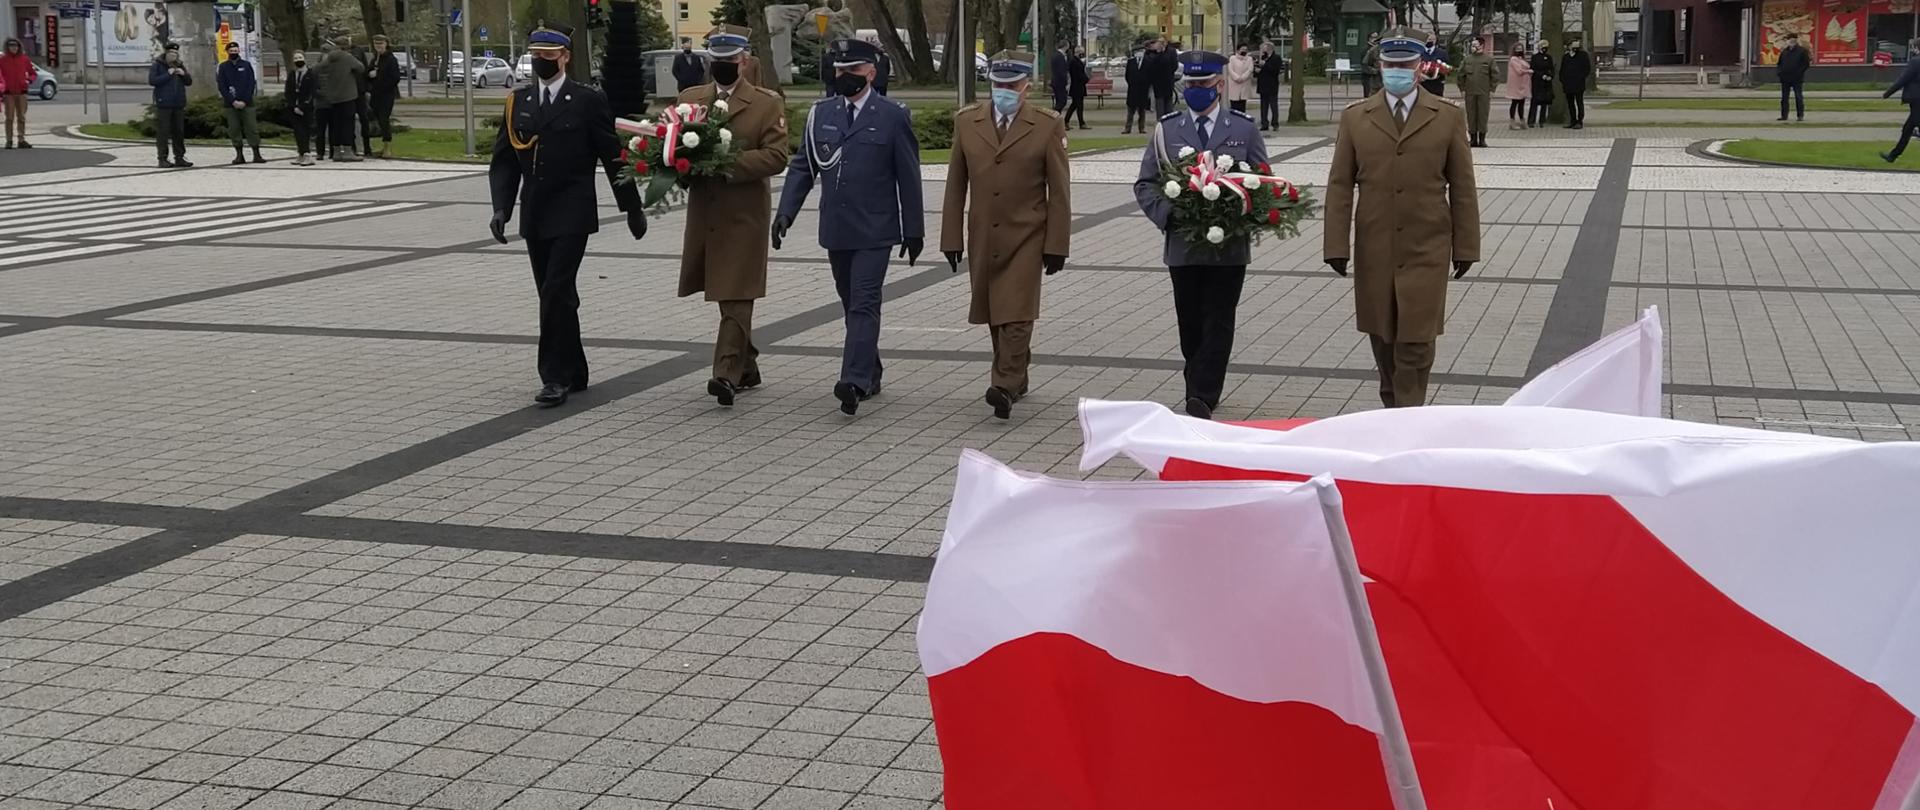 Na zdjęciu widać delegację służb mundurowych podczas składania wiązanek pod pomnikiem Marszałka Józefa Piłsudskiego podczas 230 rocznicy uchwalenia Konstytucji 3-go Maja